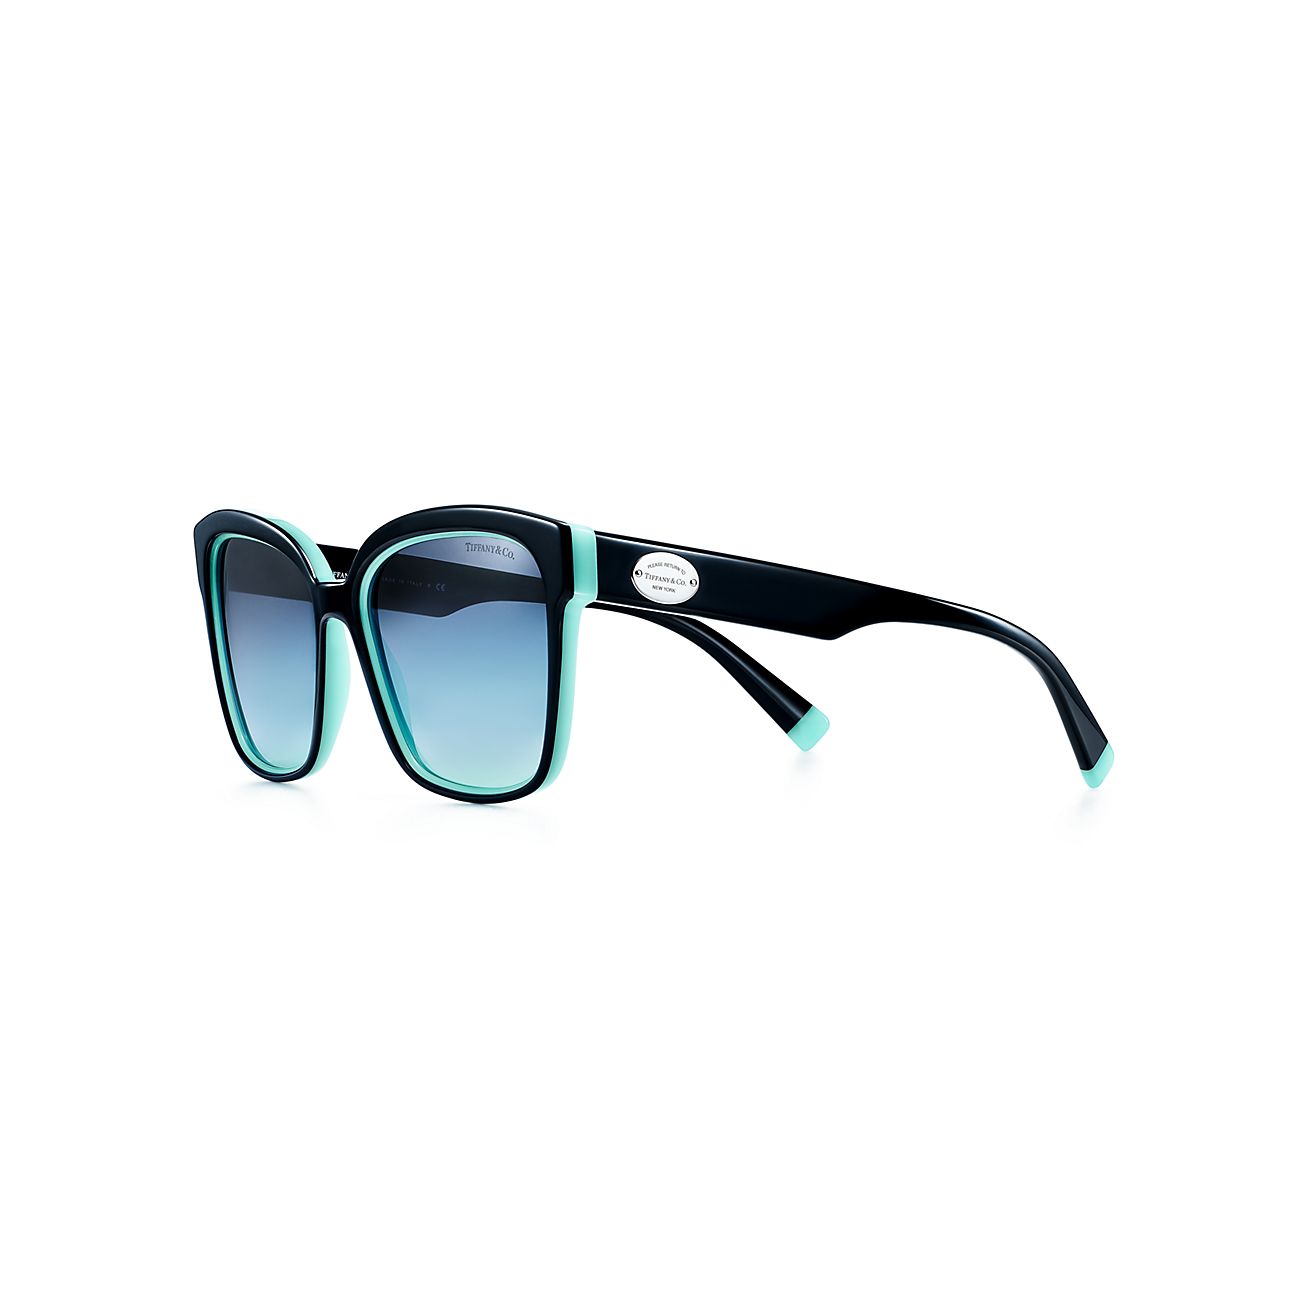 Return to Tiffany® square sunglasses in 